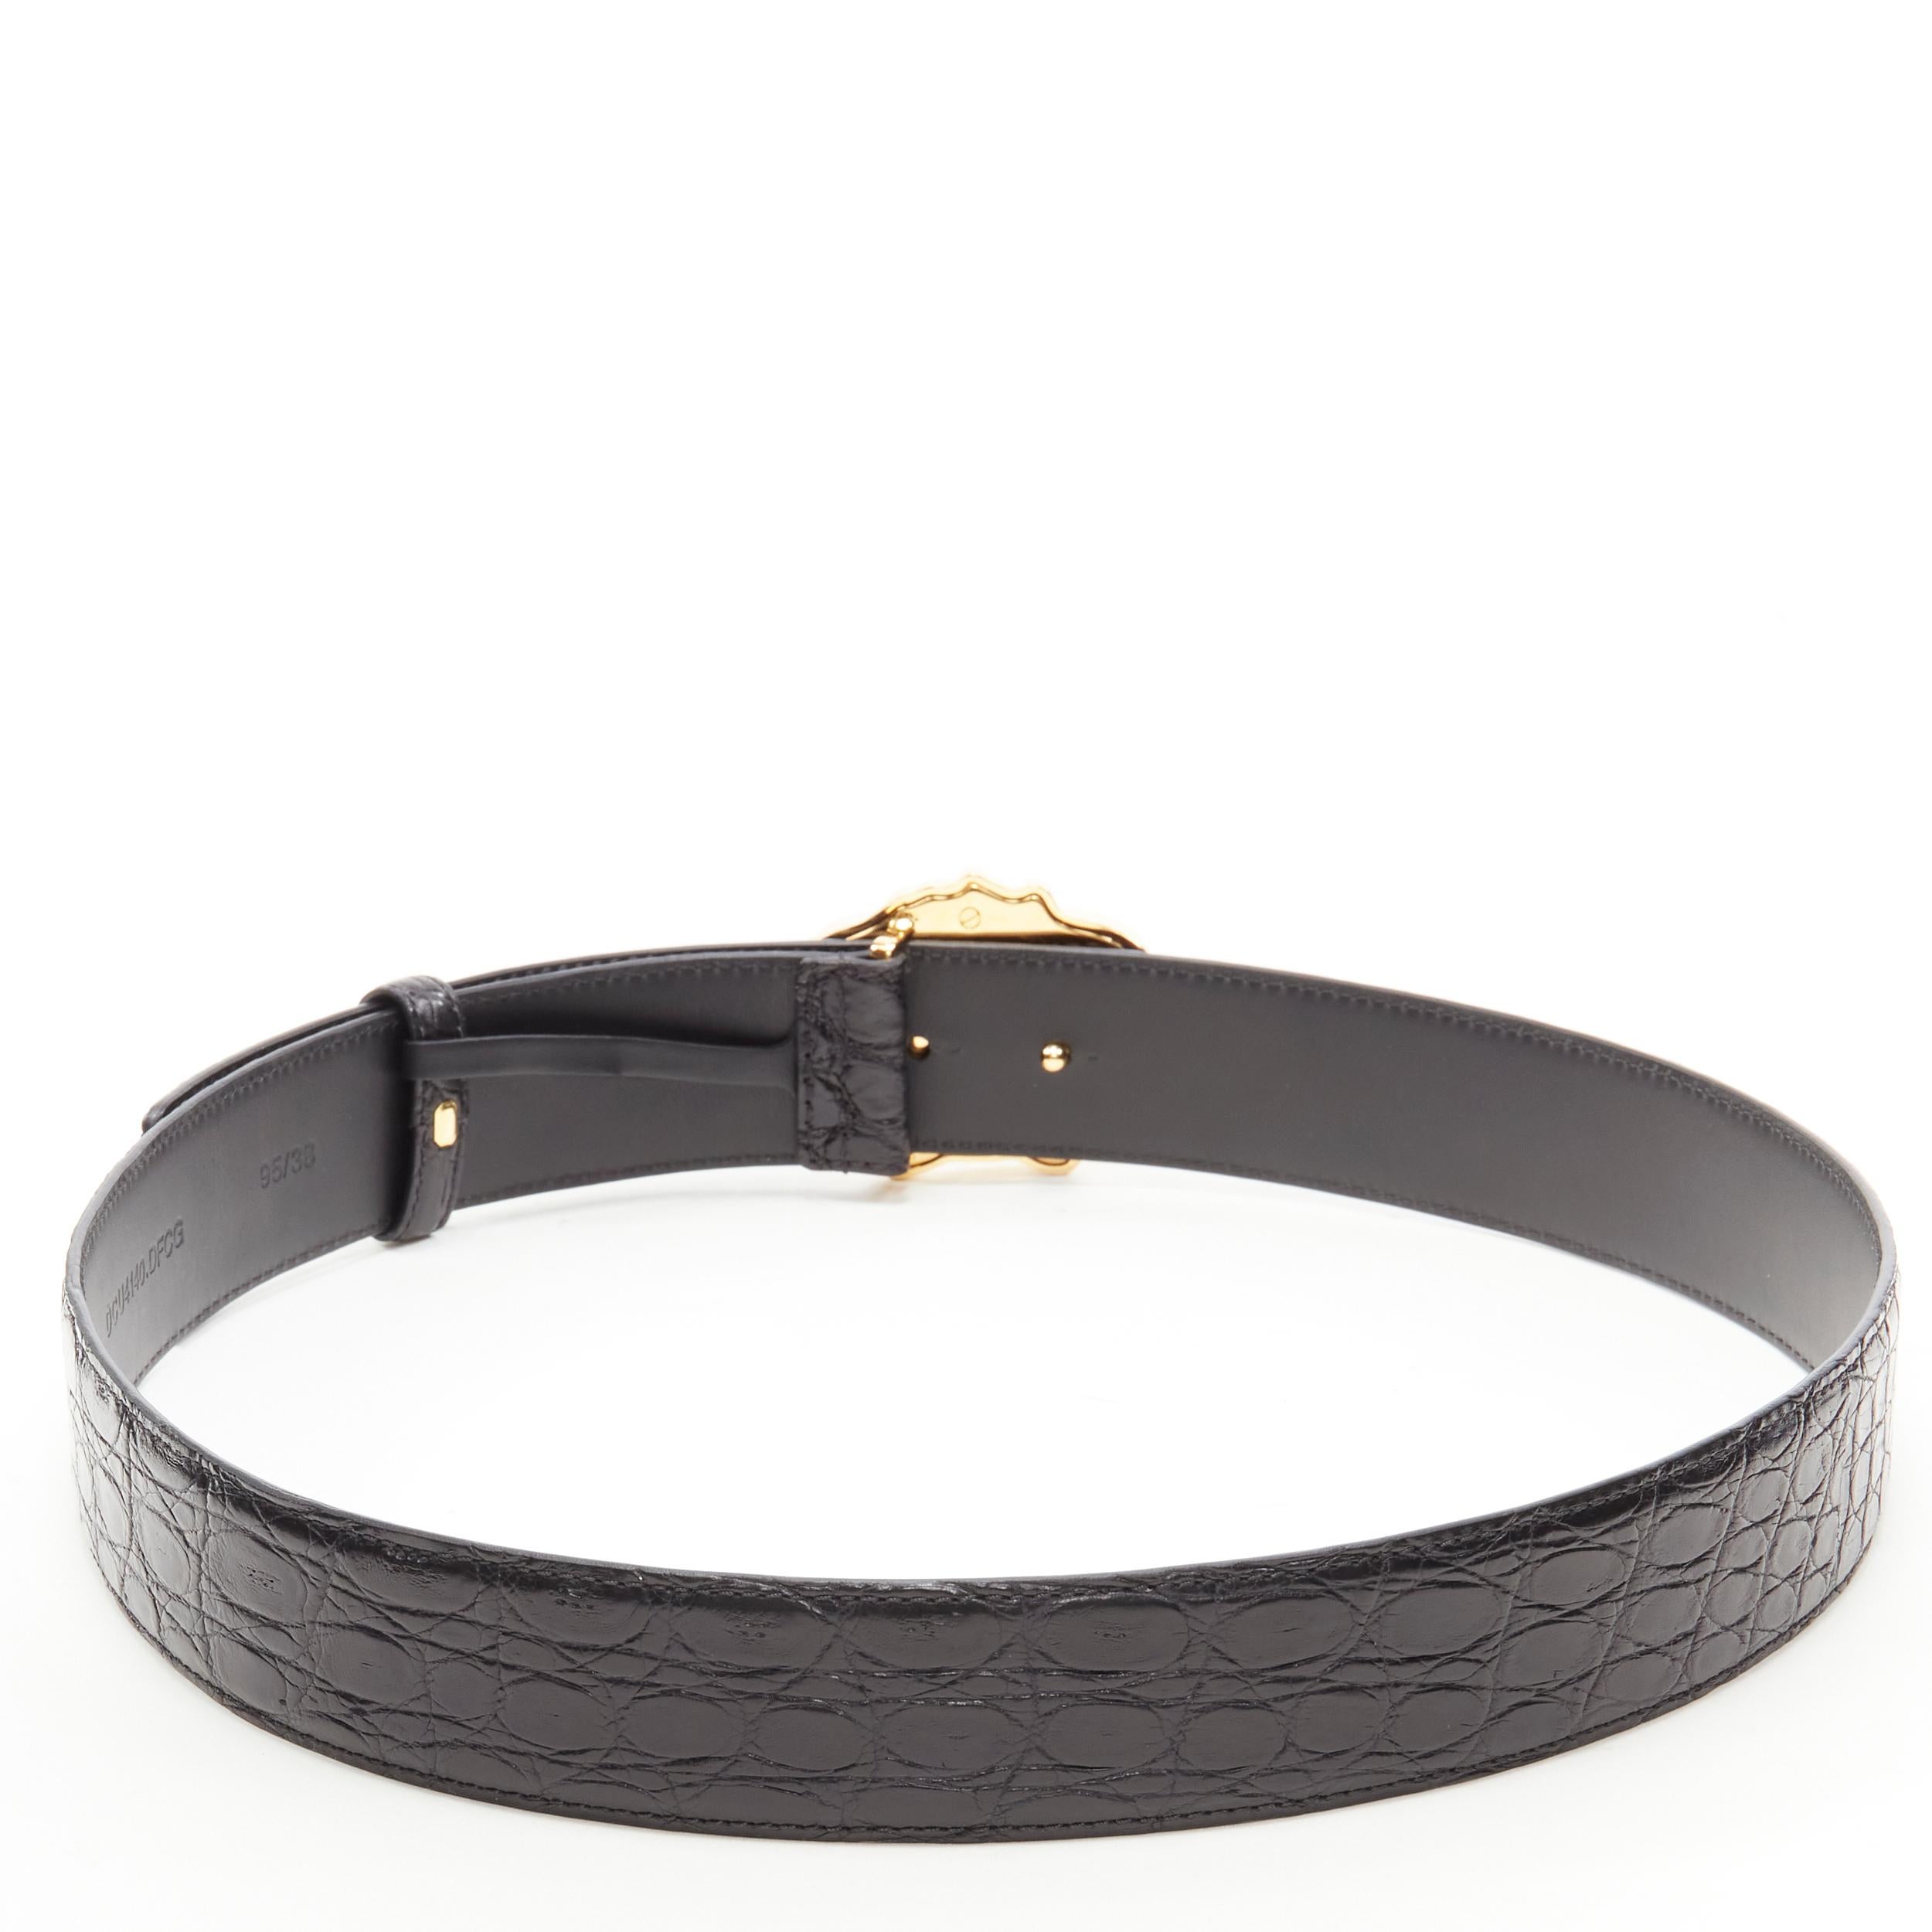 Noir new VERSACE $1200 La Medusa gold buckle black croc leather belt 110cm 44